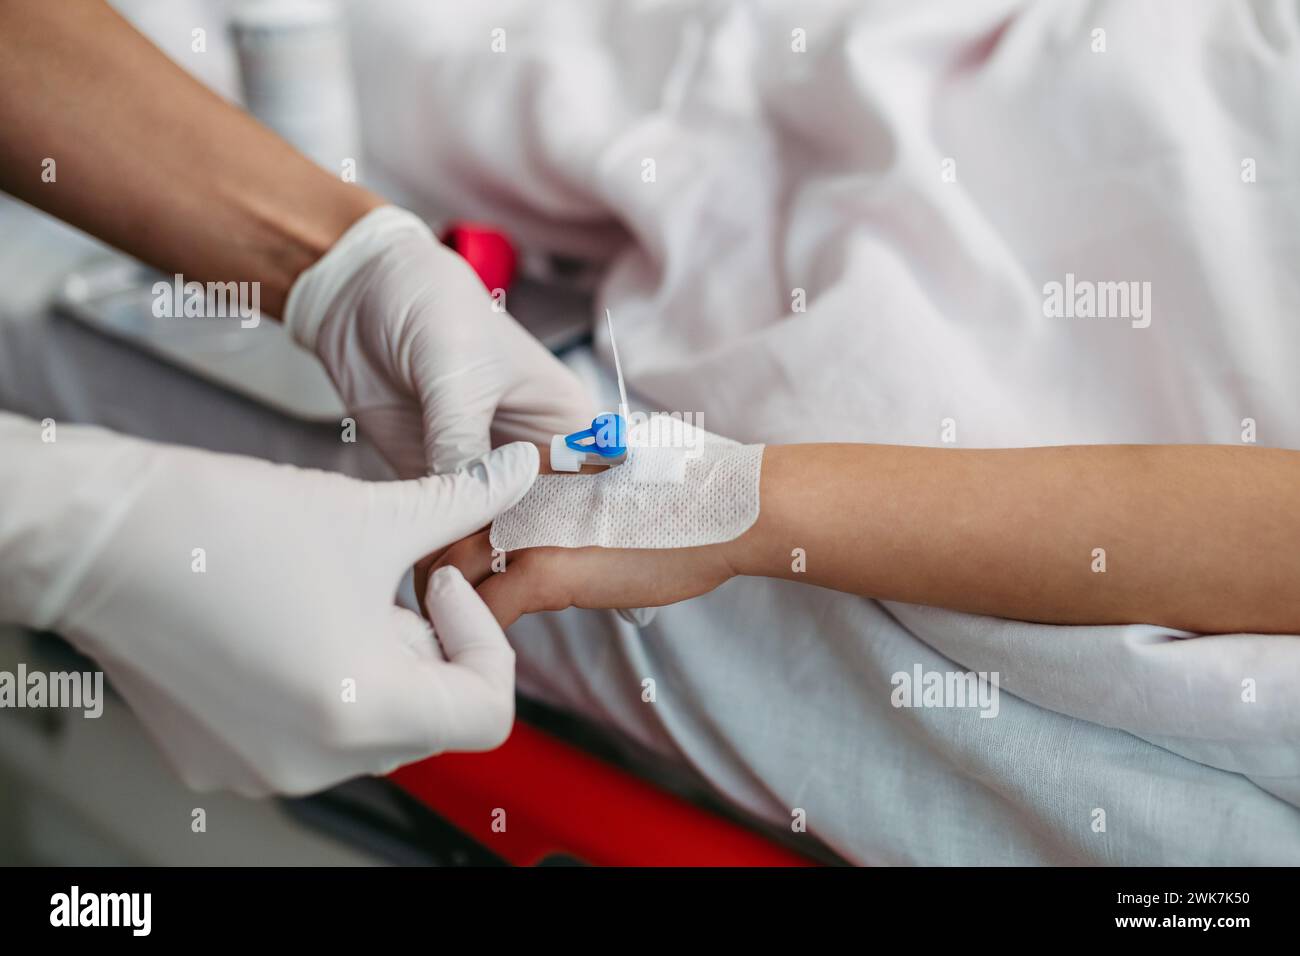 Nahaufnahme einer Schwester, die IV-Kanüle in die Vene einführt, Hand eines kleinen Mädchens. IV, intravenöse Therapie für den kindlichen Patienten. Stockfoto